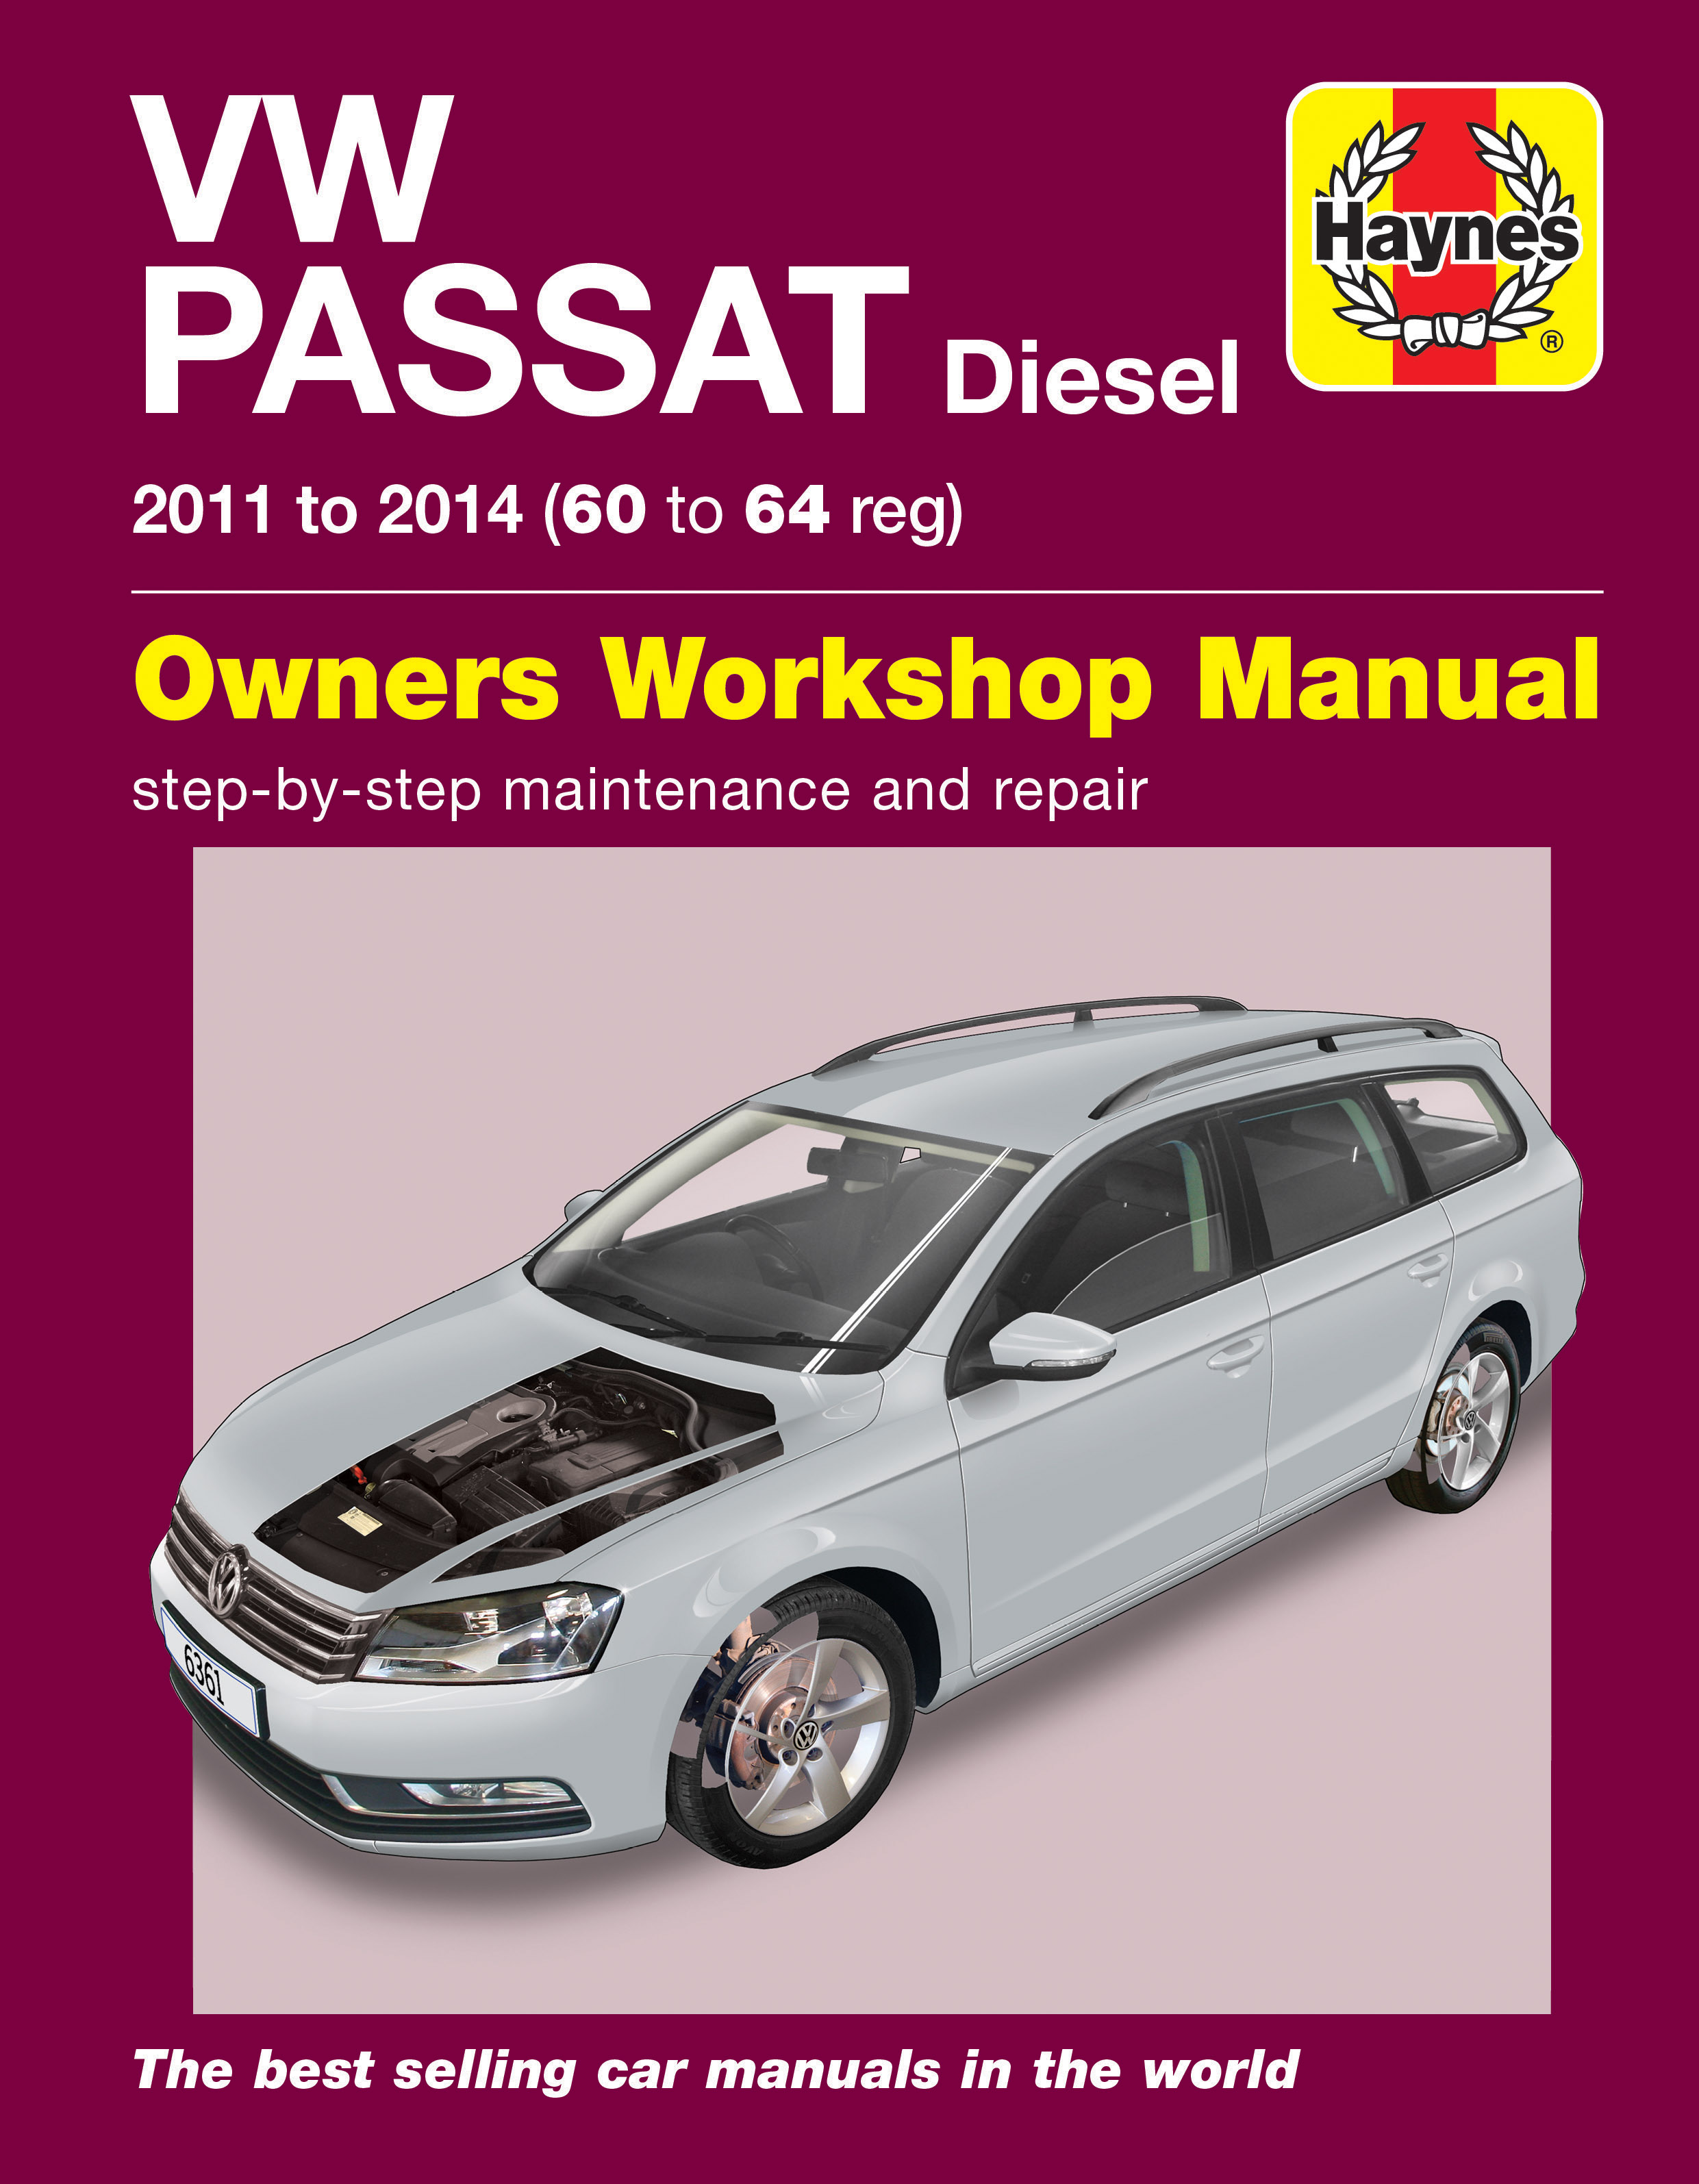 Volkswagen Passat (B7) - Car info guide